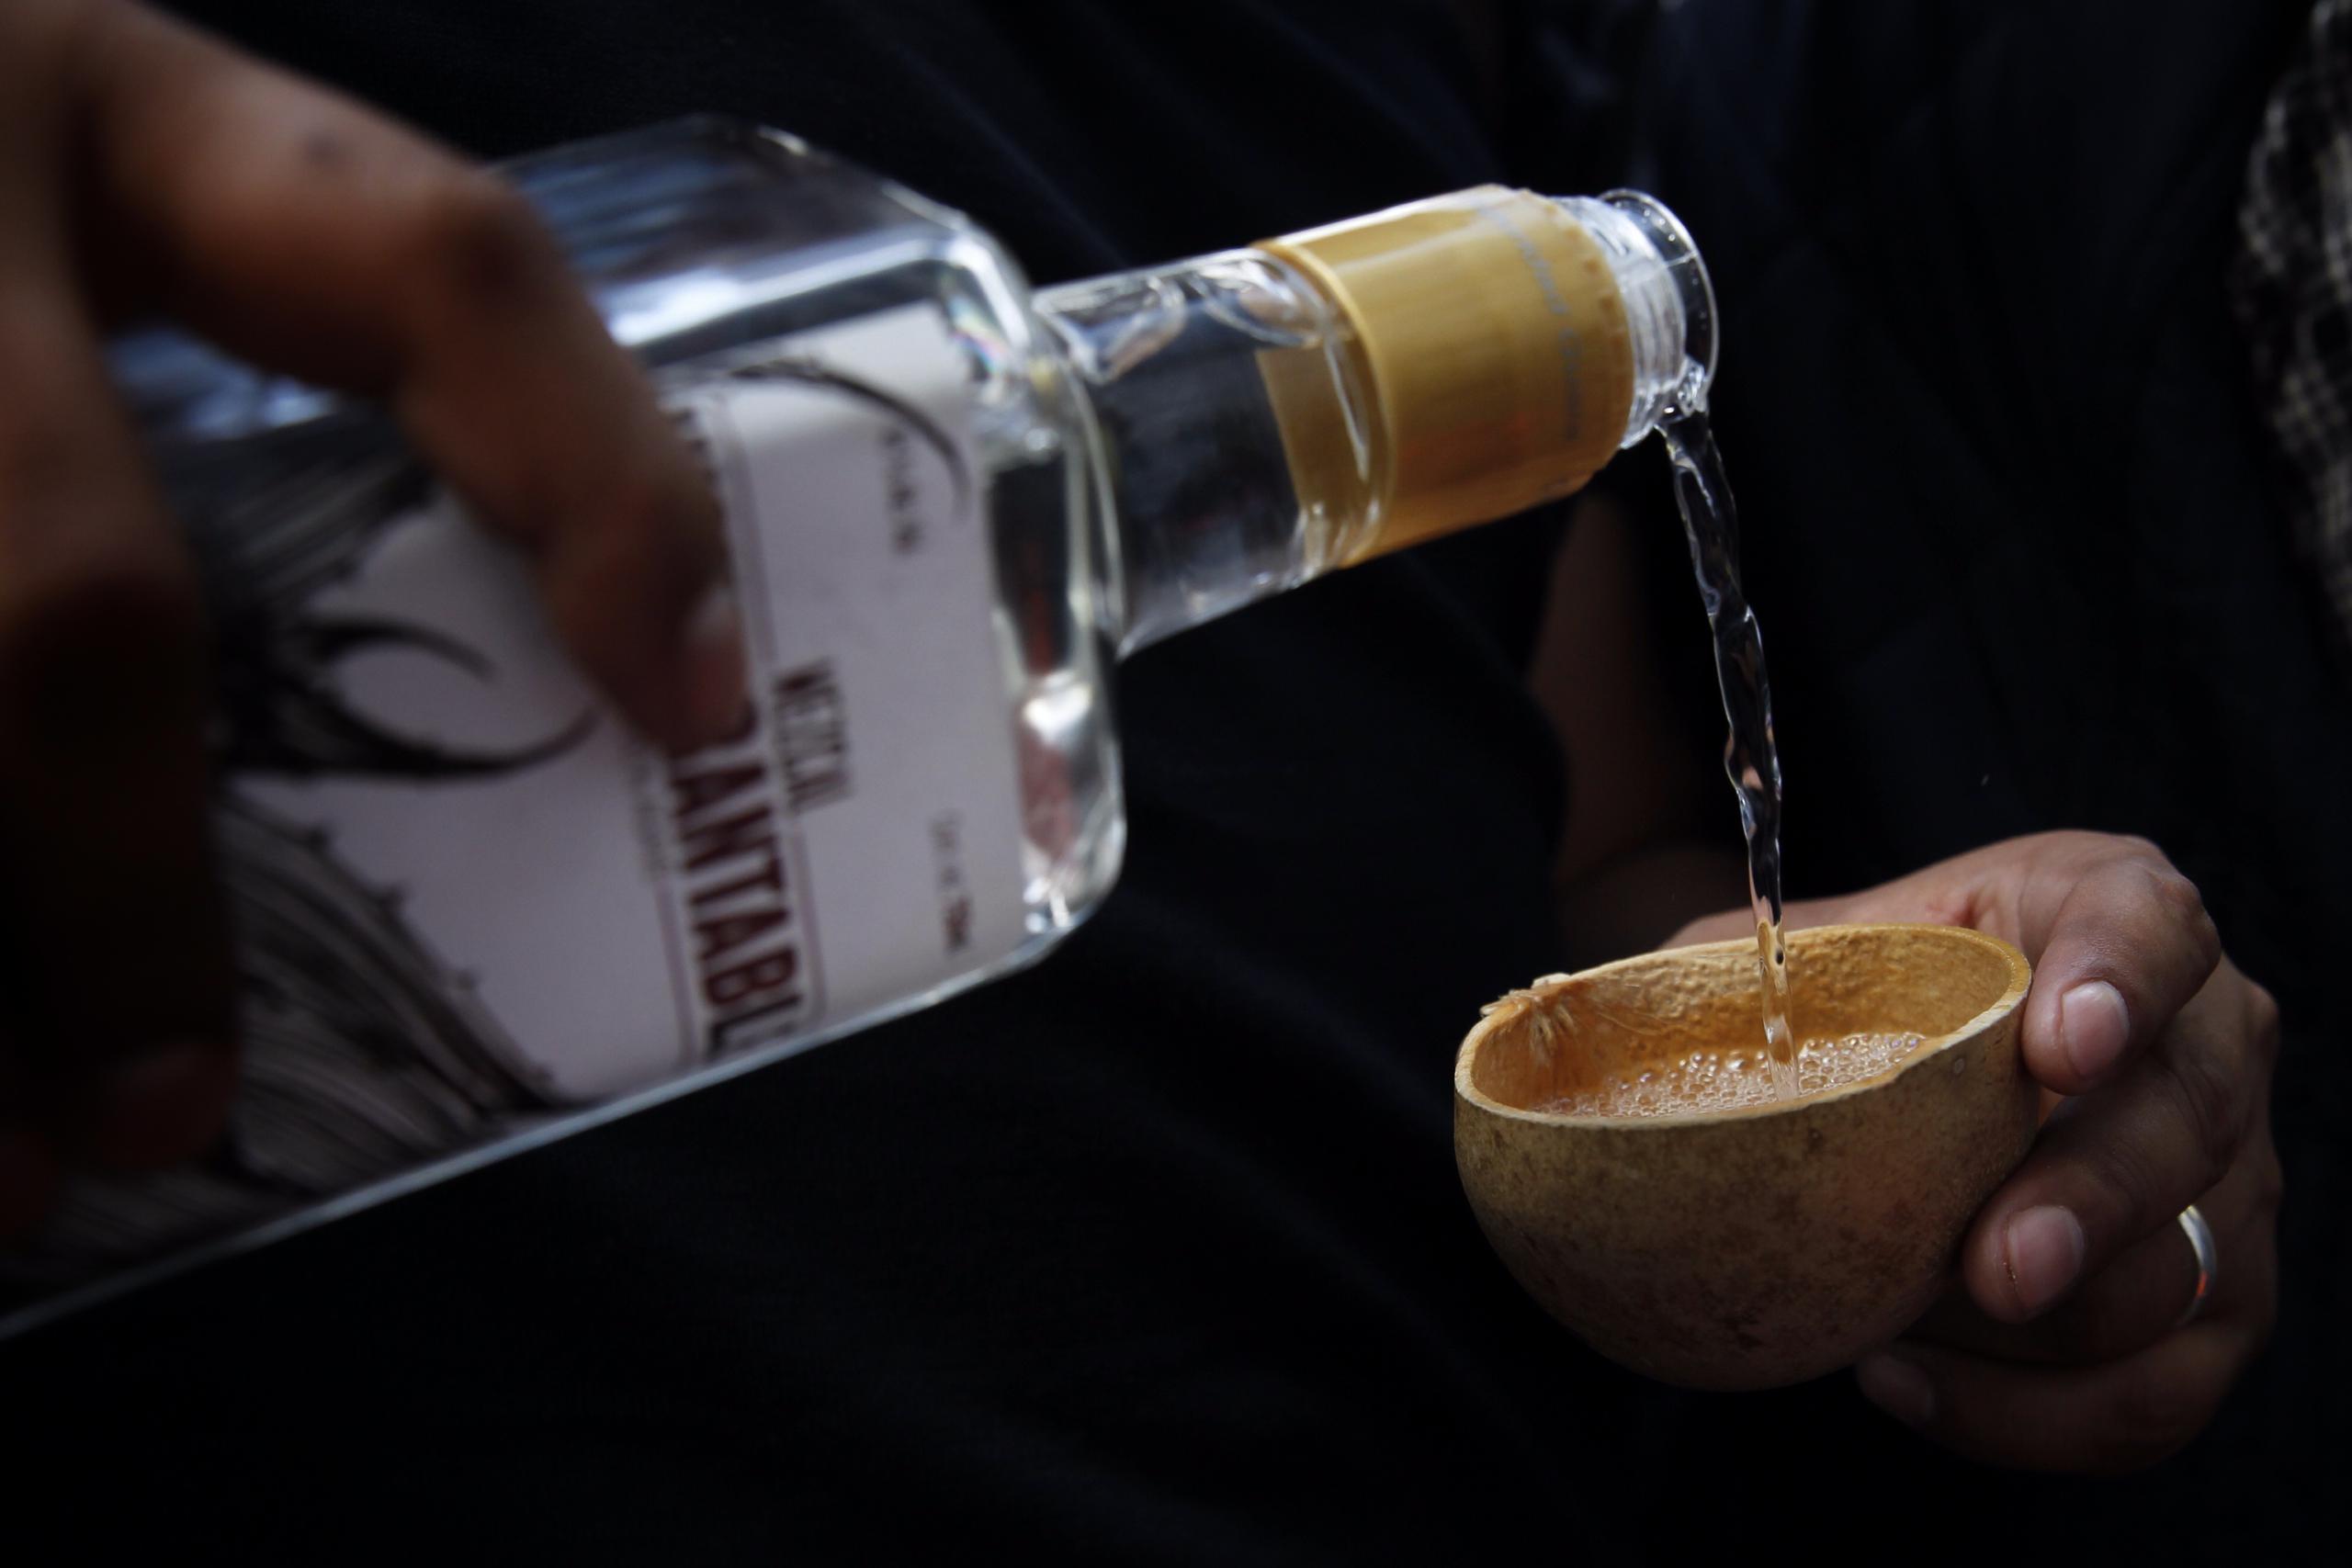 Desde los años 40 el siglo pasado, para distinguir y darle sabor al mezcal, una bebida tradicional mexicana hecha de la savia hervida y fermentada de los agaves cuyo consumo está en auge, se agregan gusanos a las botellas.